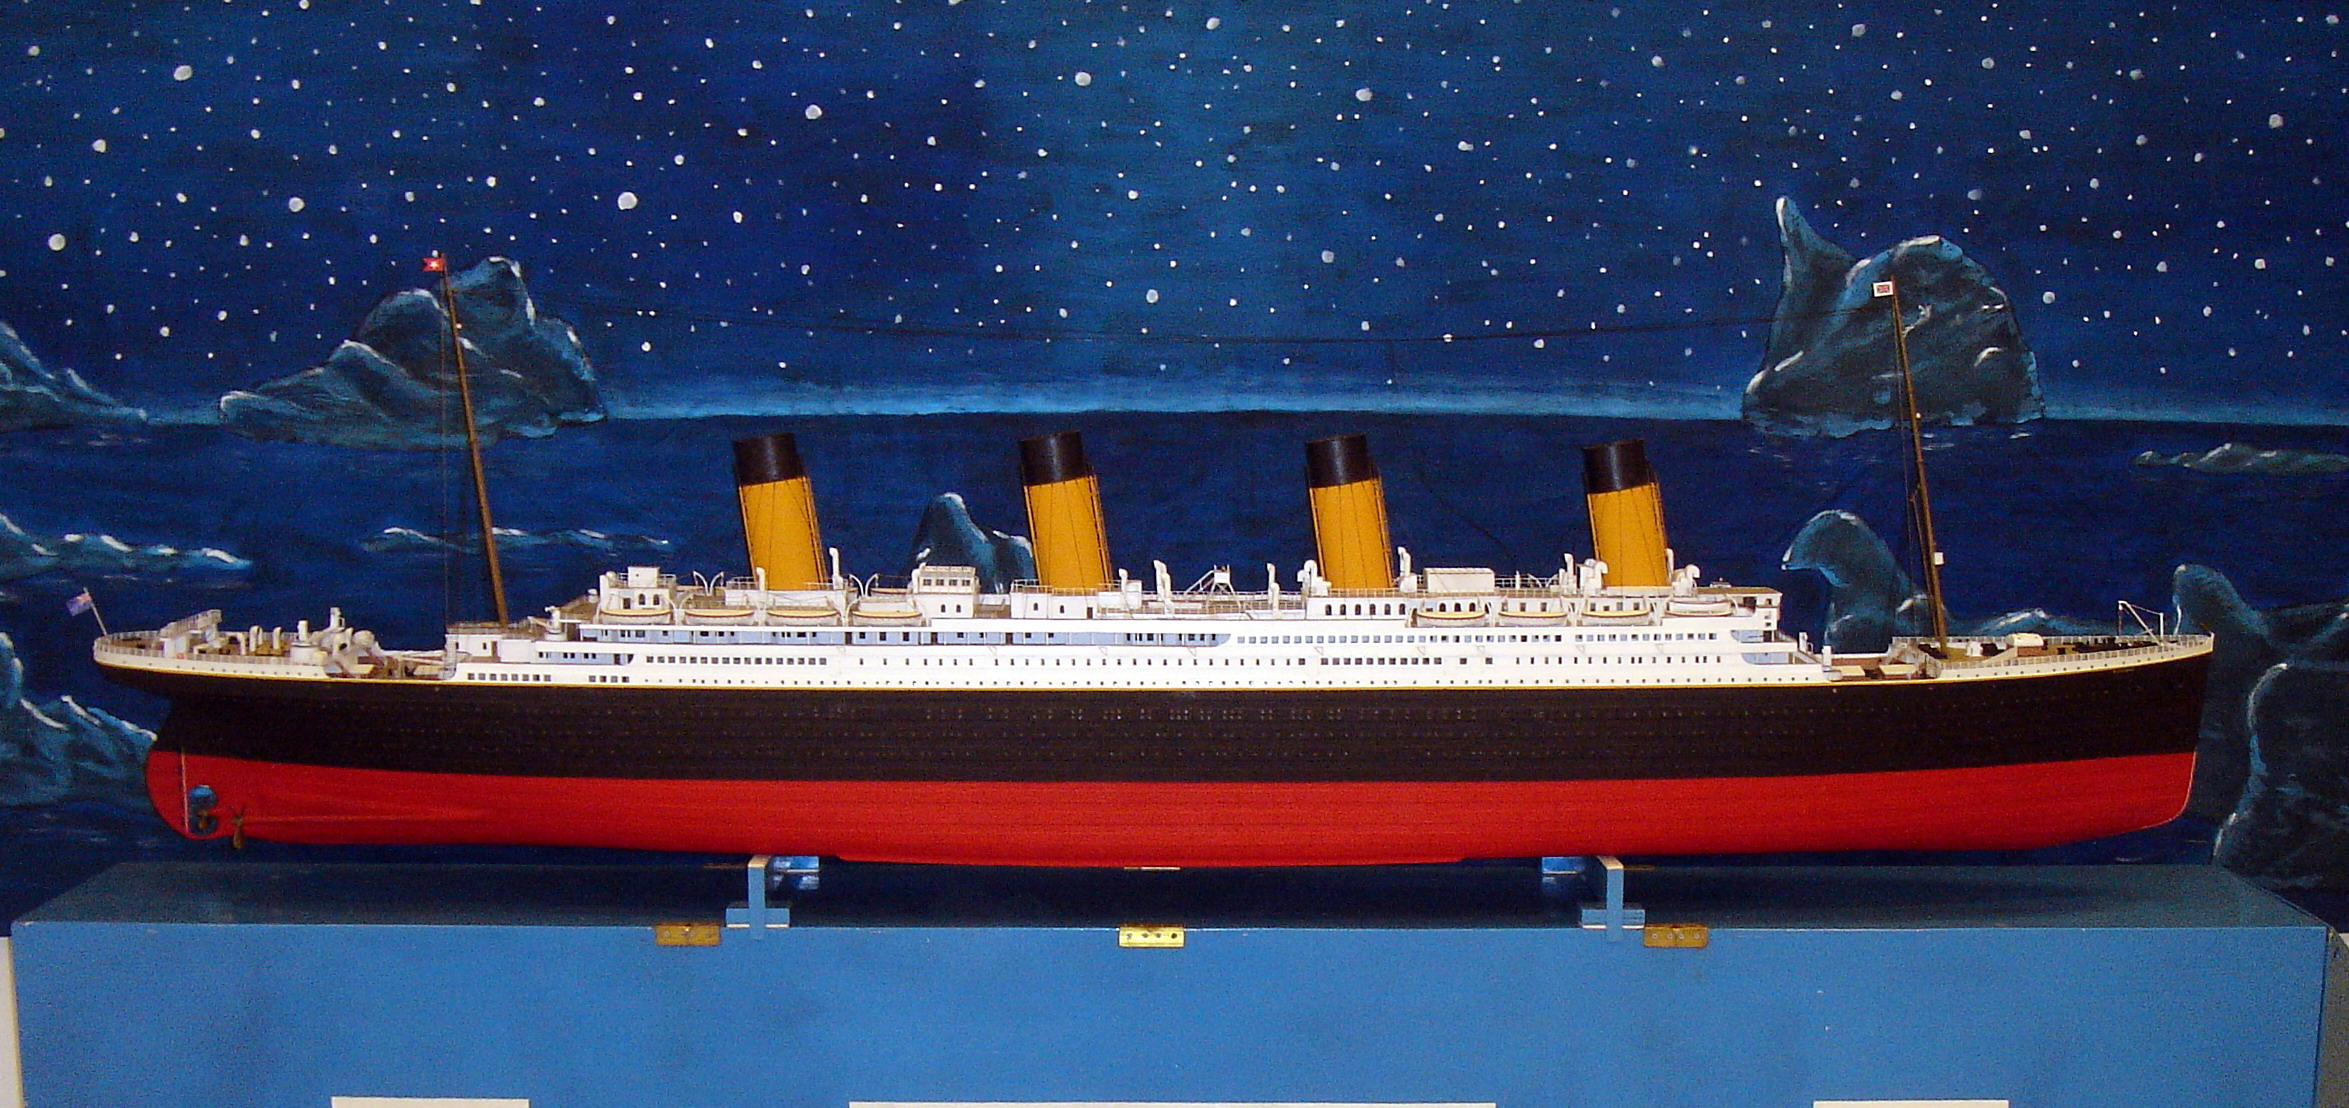 Modellino di legno Titanic